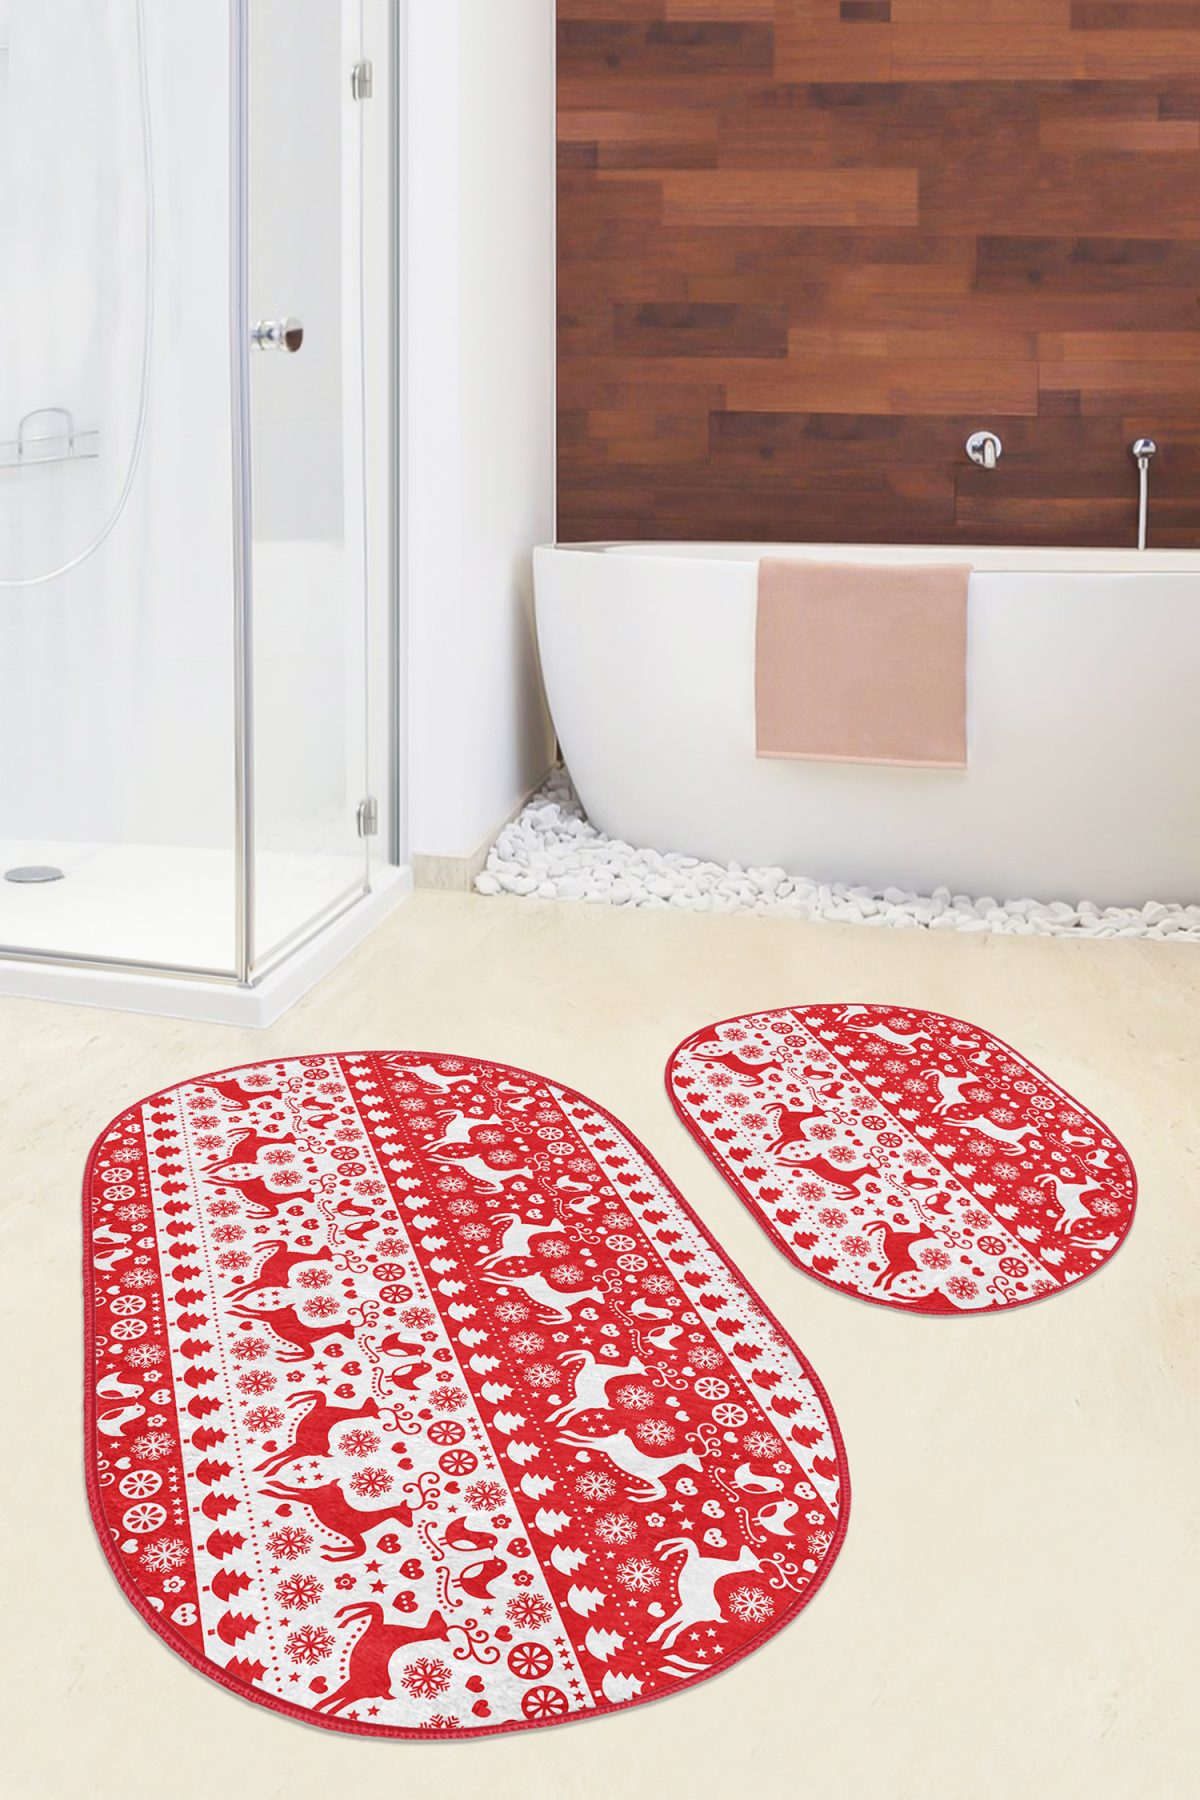 Kırmızı Beyaz Geyikler Dijital Baskılı 2'li Oval Kaymaz Tabanlı Banyo & Mutfak Paspas Takımı Realhomes